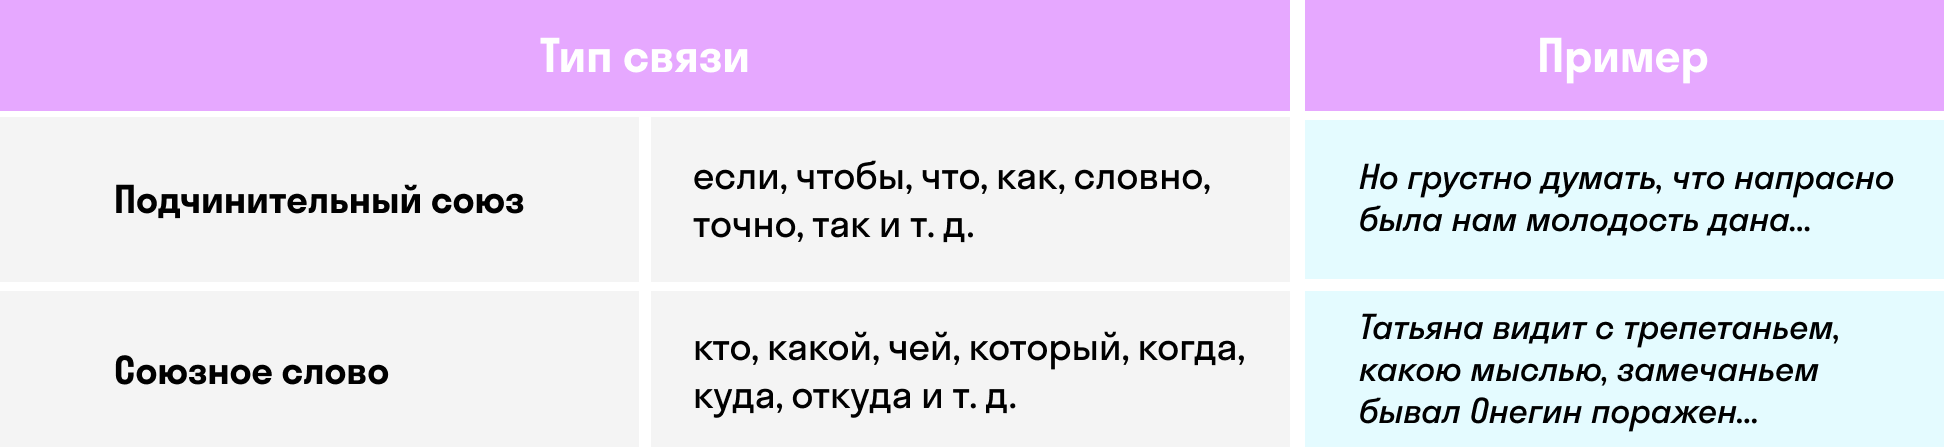 Таблица типов связи в СПП | skysmart.ru